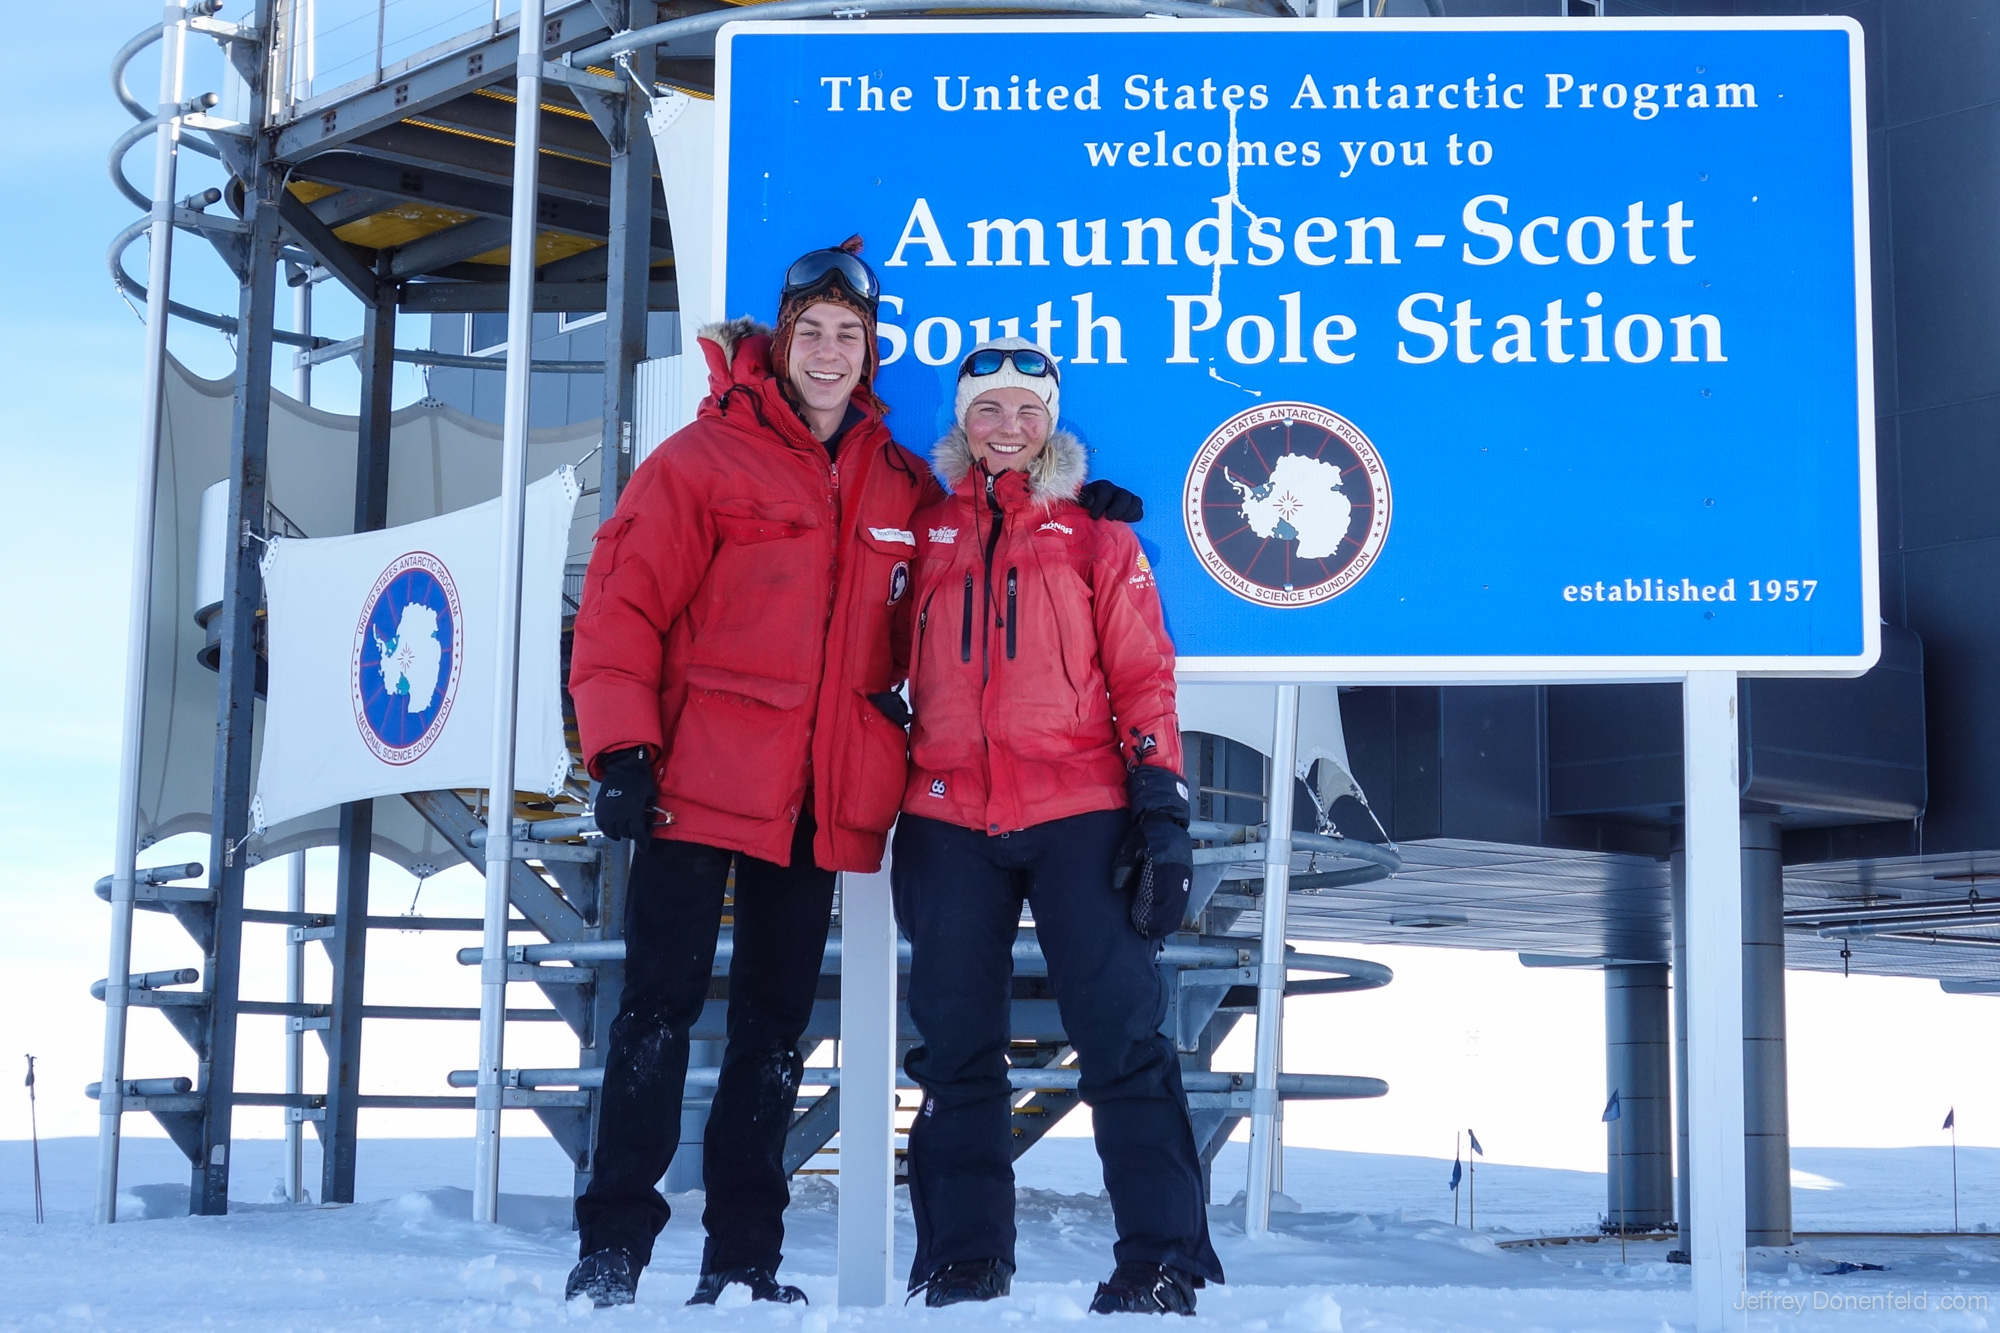 Icelandic Skier Vilborg Arna Gissurardóttir Completes Her Epic Trek To The South Pole